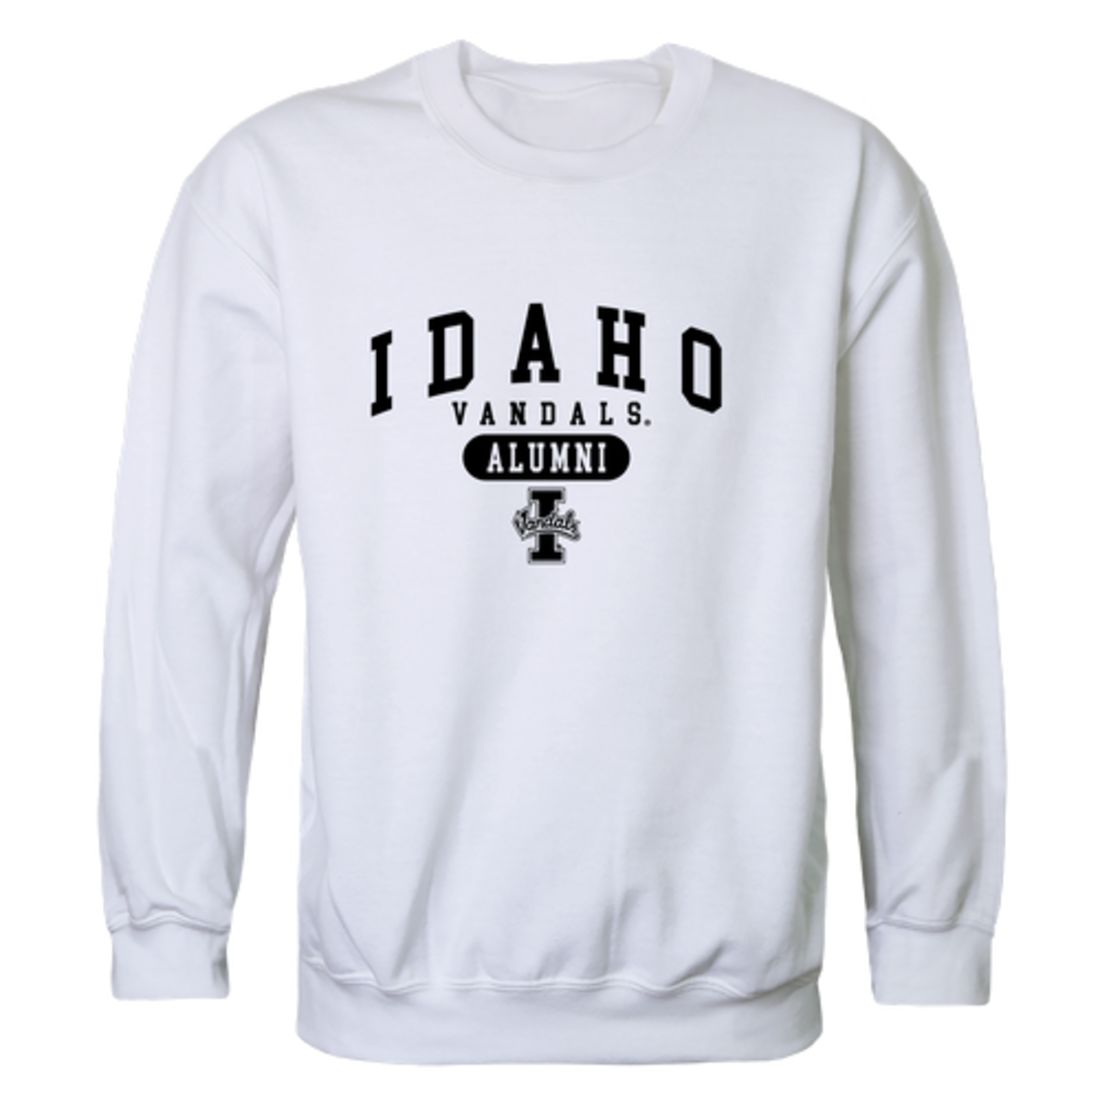 University of Idaho Vandals Alumni Fleece Crewneck Pullover Sweatshirt Black-Campus-Wardrobe